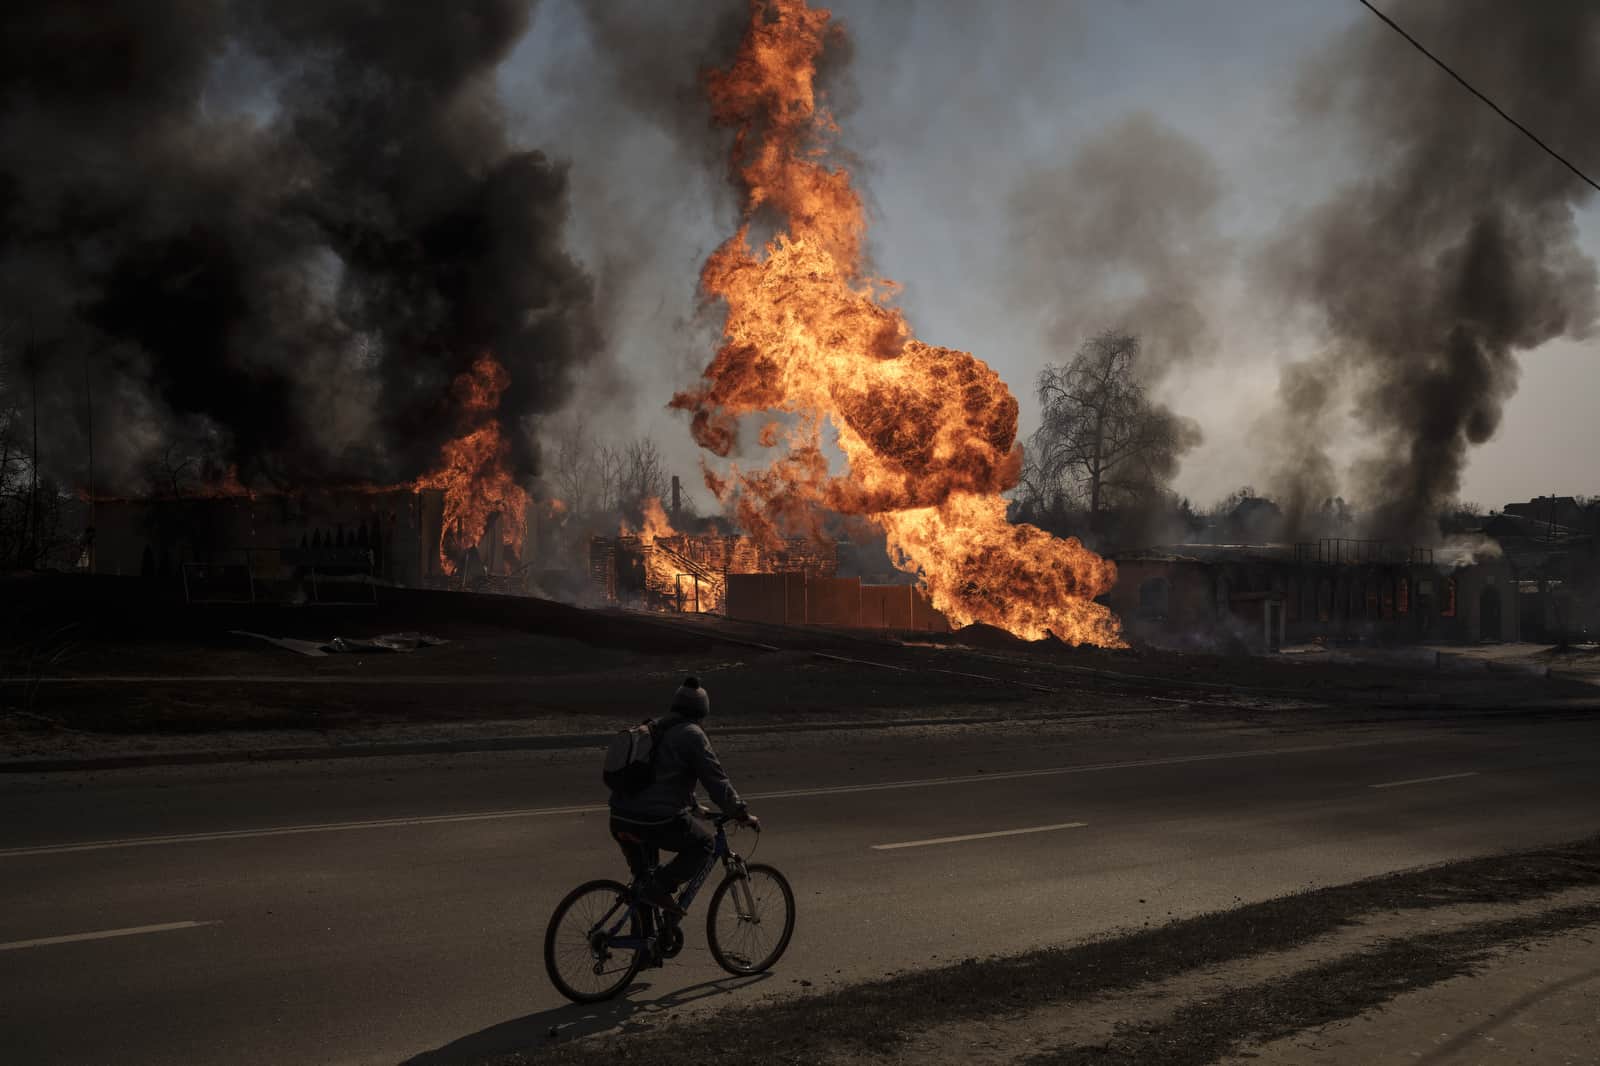 ARCHIVO - Un hombre monta su bicicleta frente a las llamas y el humo que sale de un incendio luego de un ataque ruso en Kharkiv, Ucrania, el 25 de marzo de 2022.